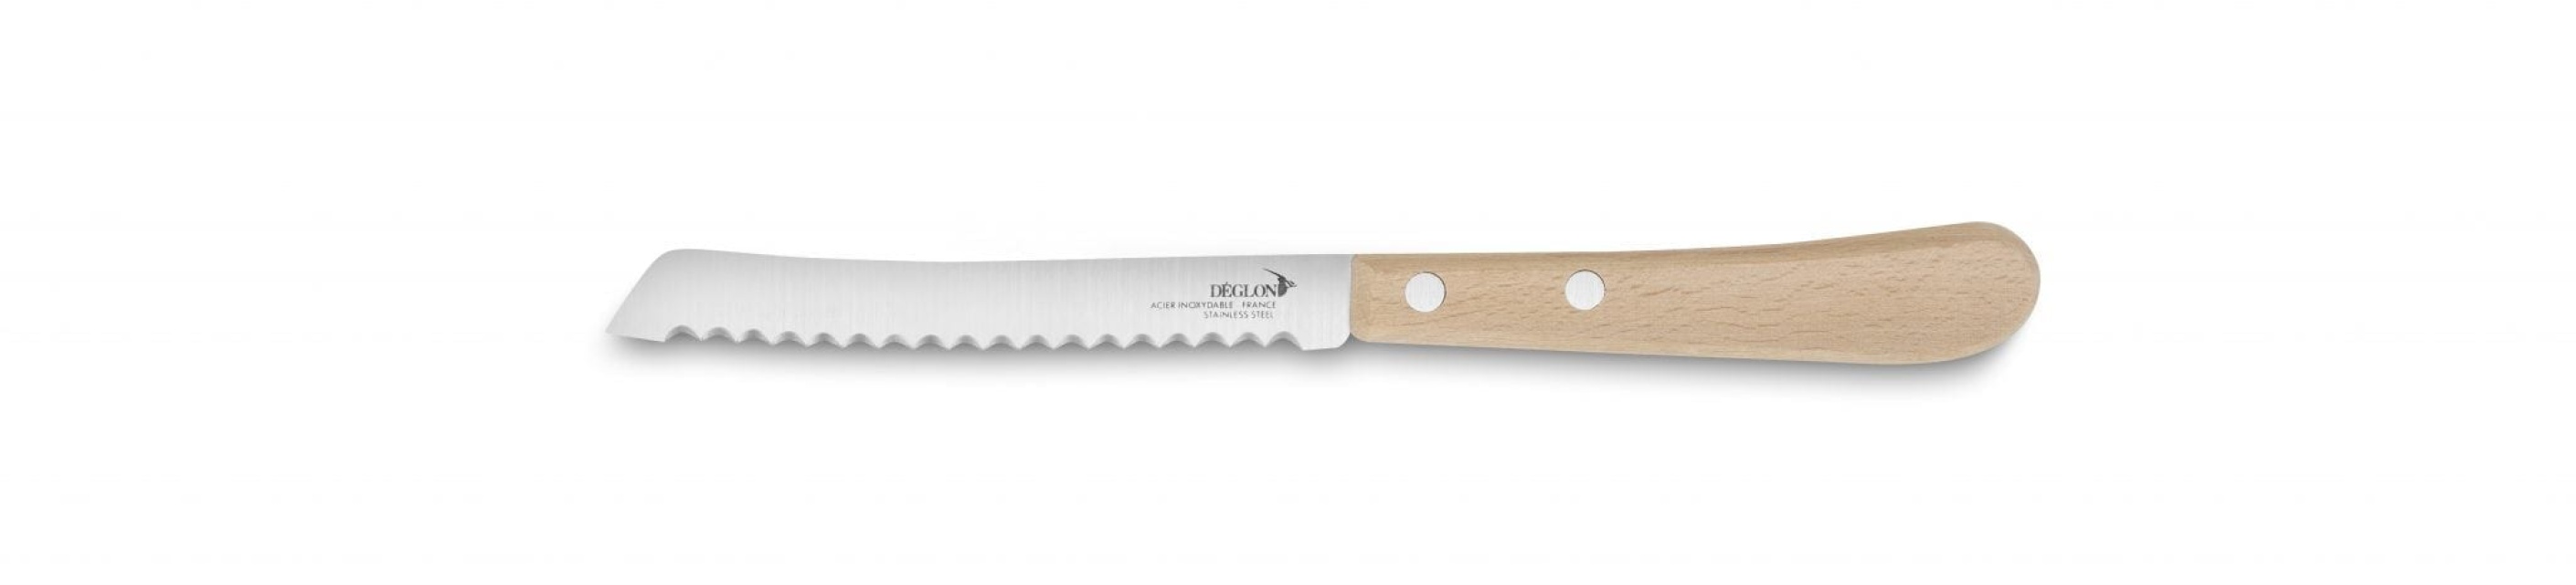 Tomato knife, 11 cm - Deglon